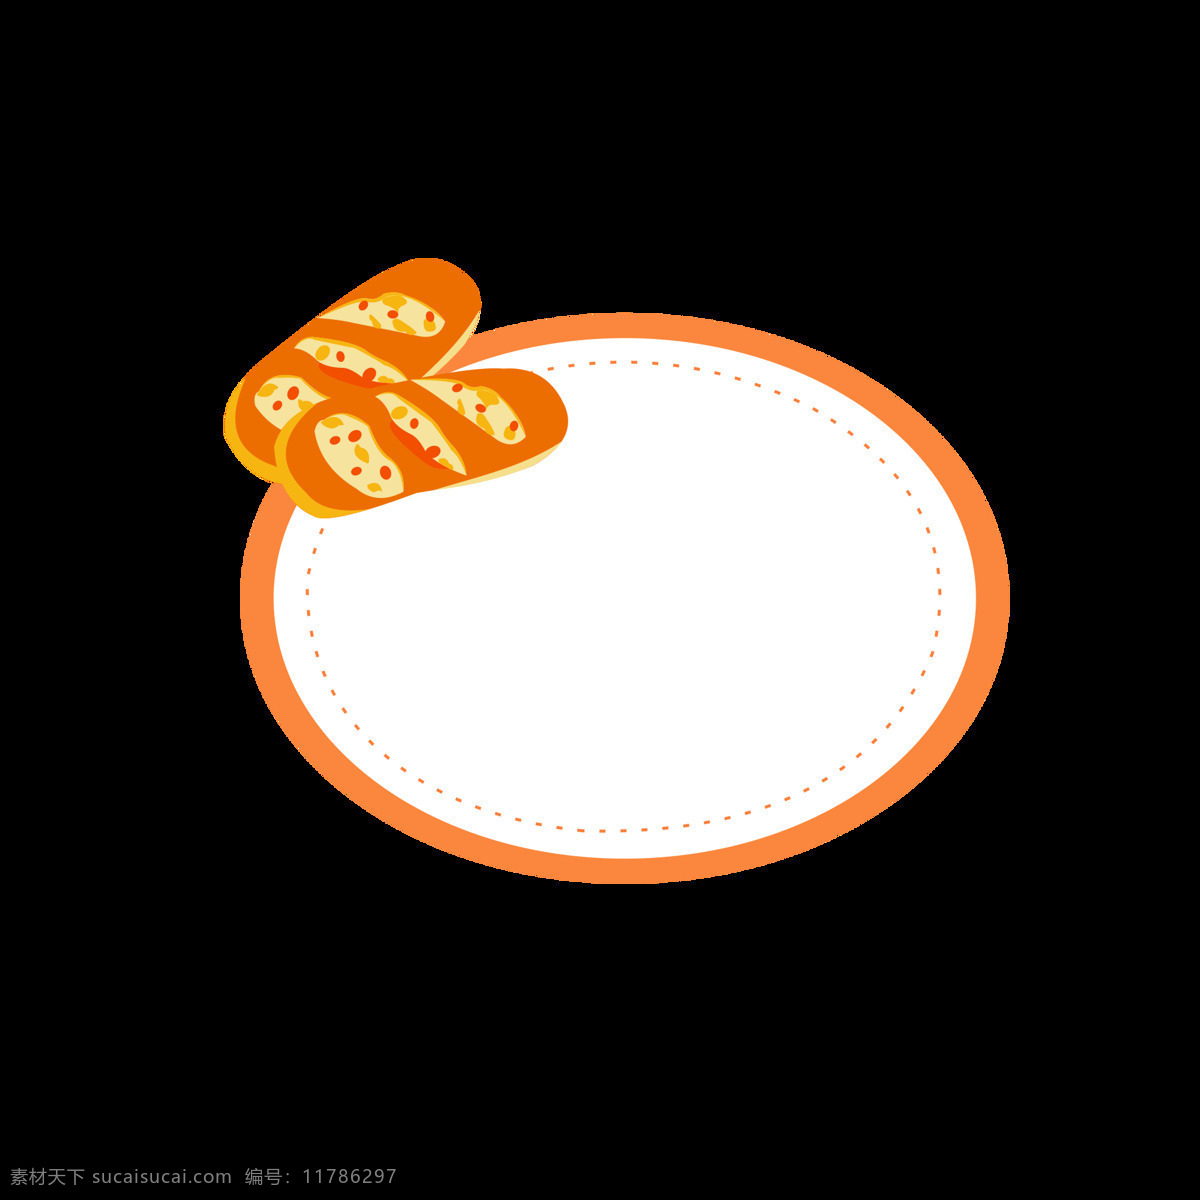 原创 卡通 可爱 面包 边框 元素 美食 元素设计 橘色边框